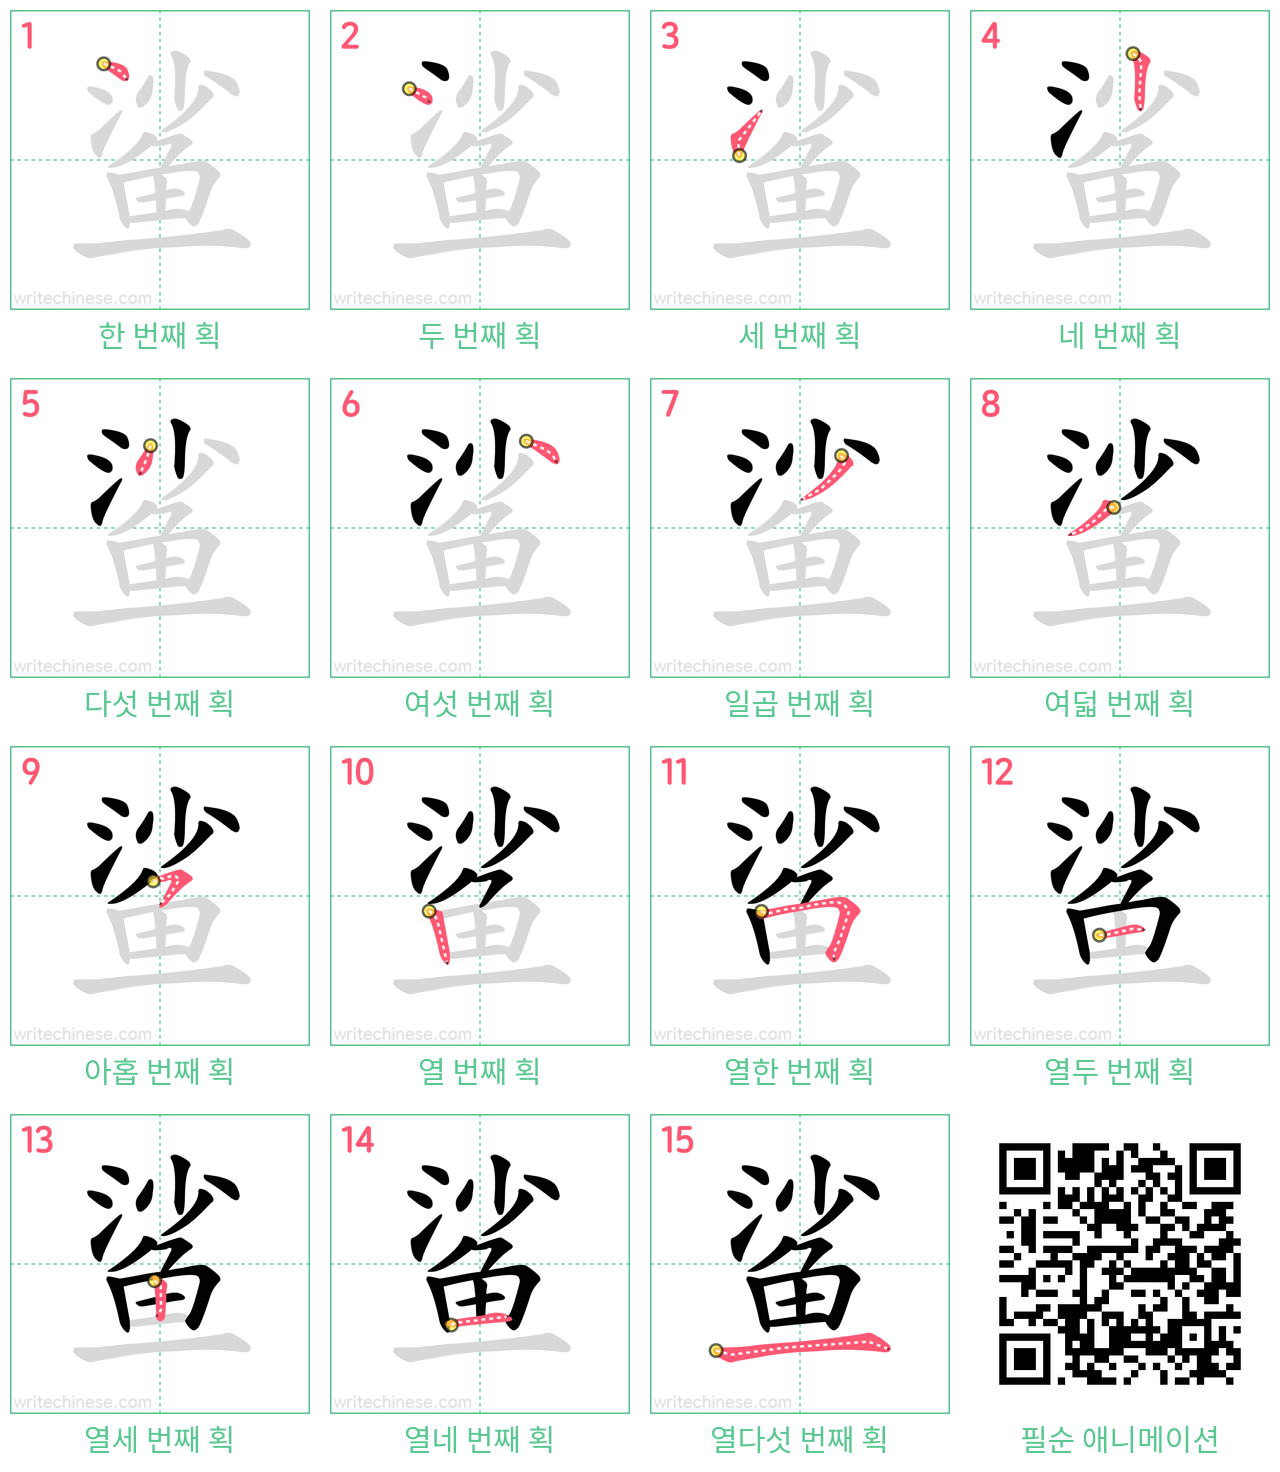 鲨 step-by-step stroke order diagrams